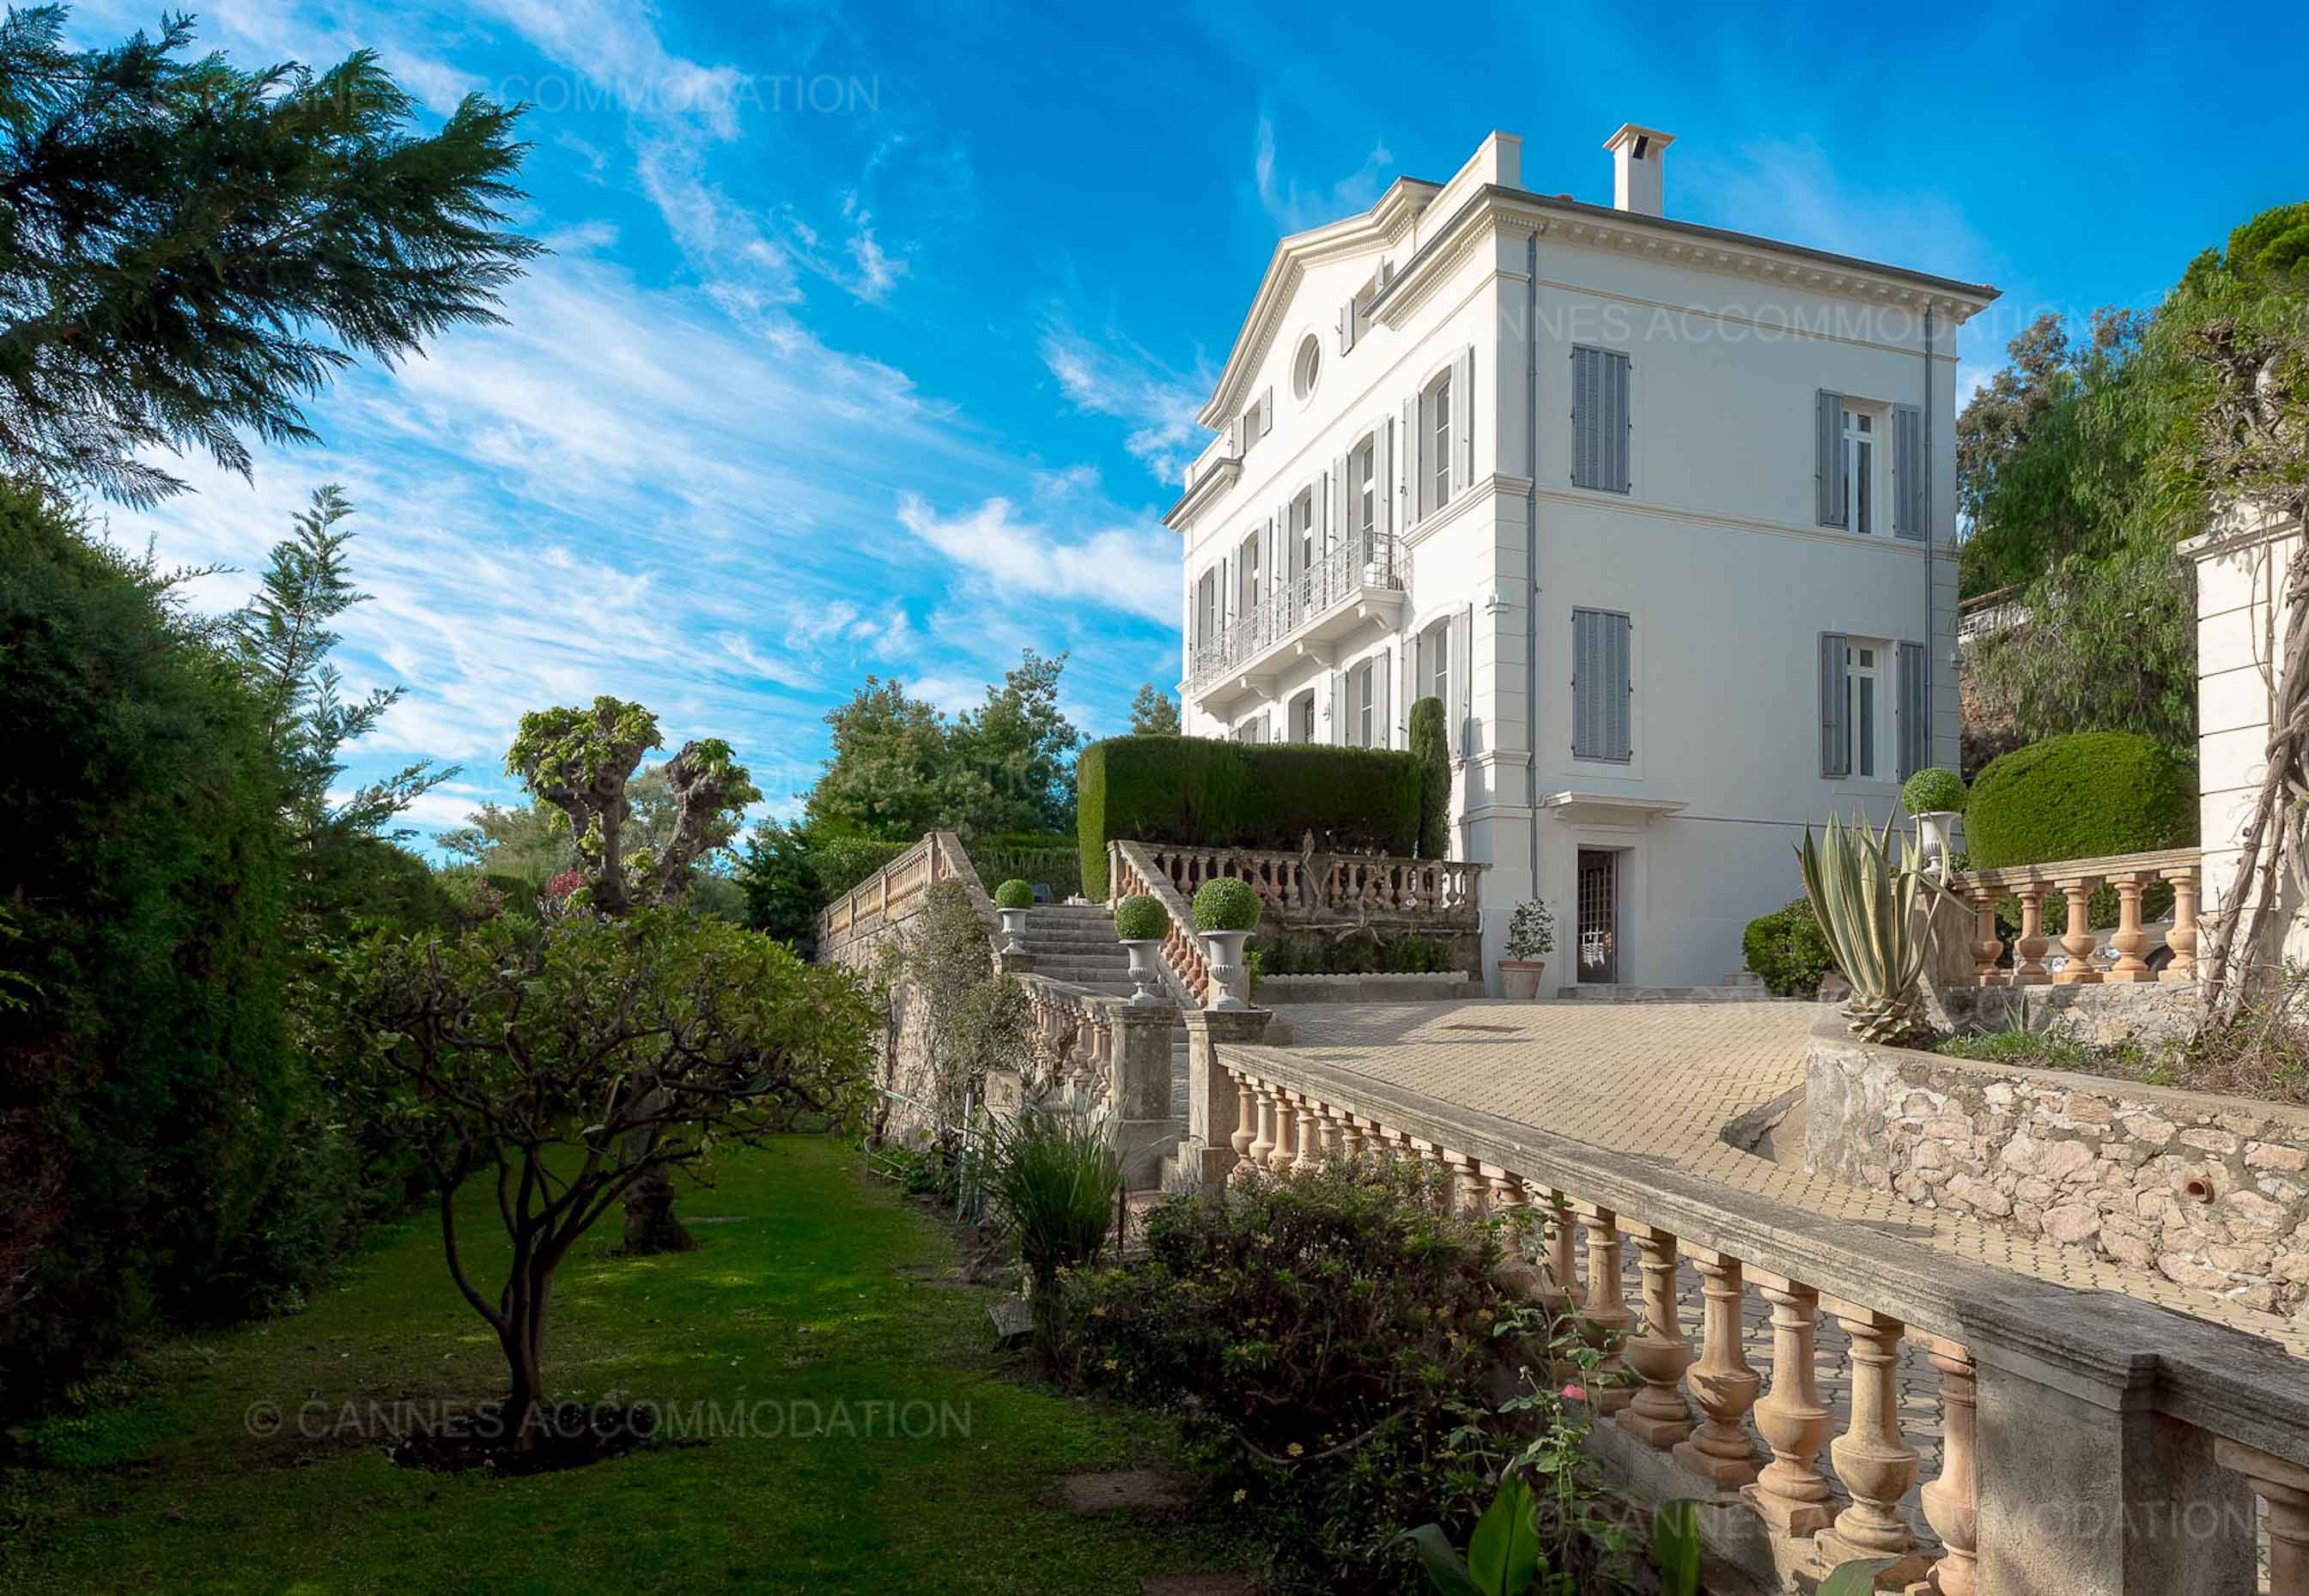 Cannes Accommodations Vendre votre appartement ou votre villa à Cannes